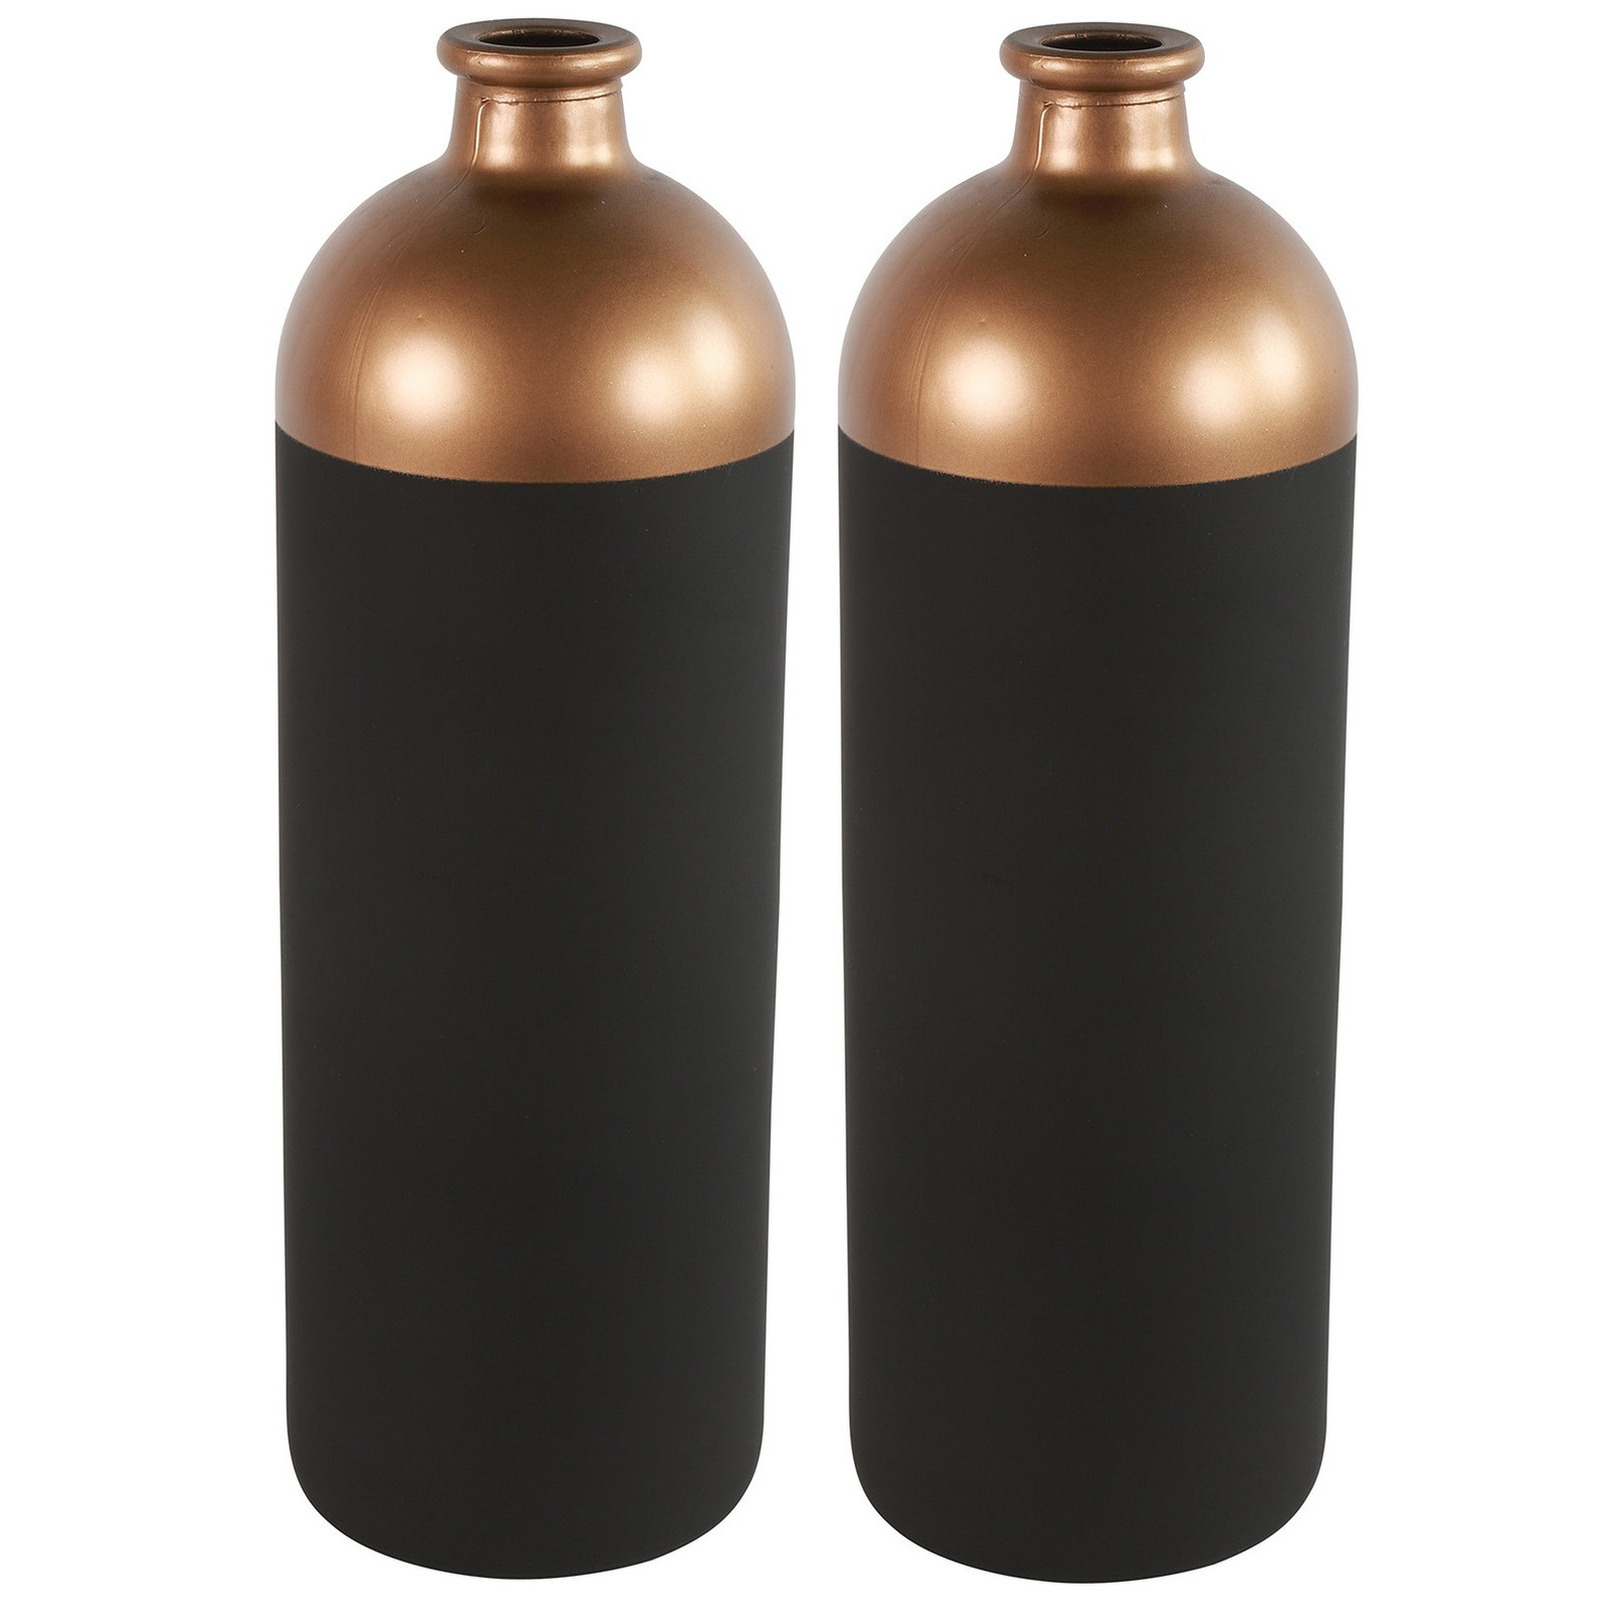 Countryfield Bloemen-deco vaas 2x zwart-koper glas luxe fles vorm D13 x H41 cm